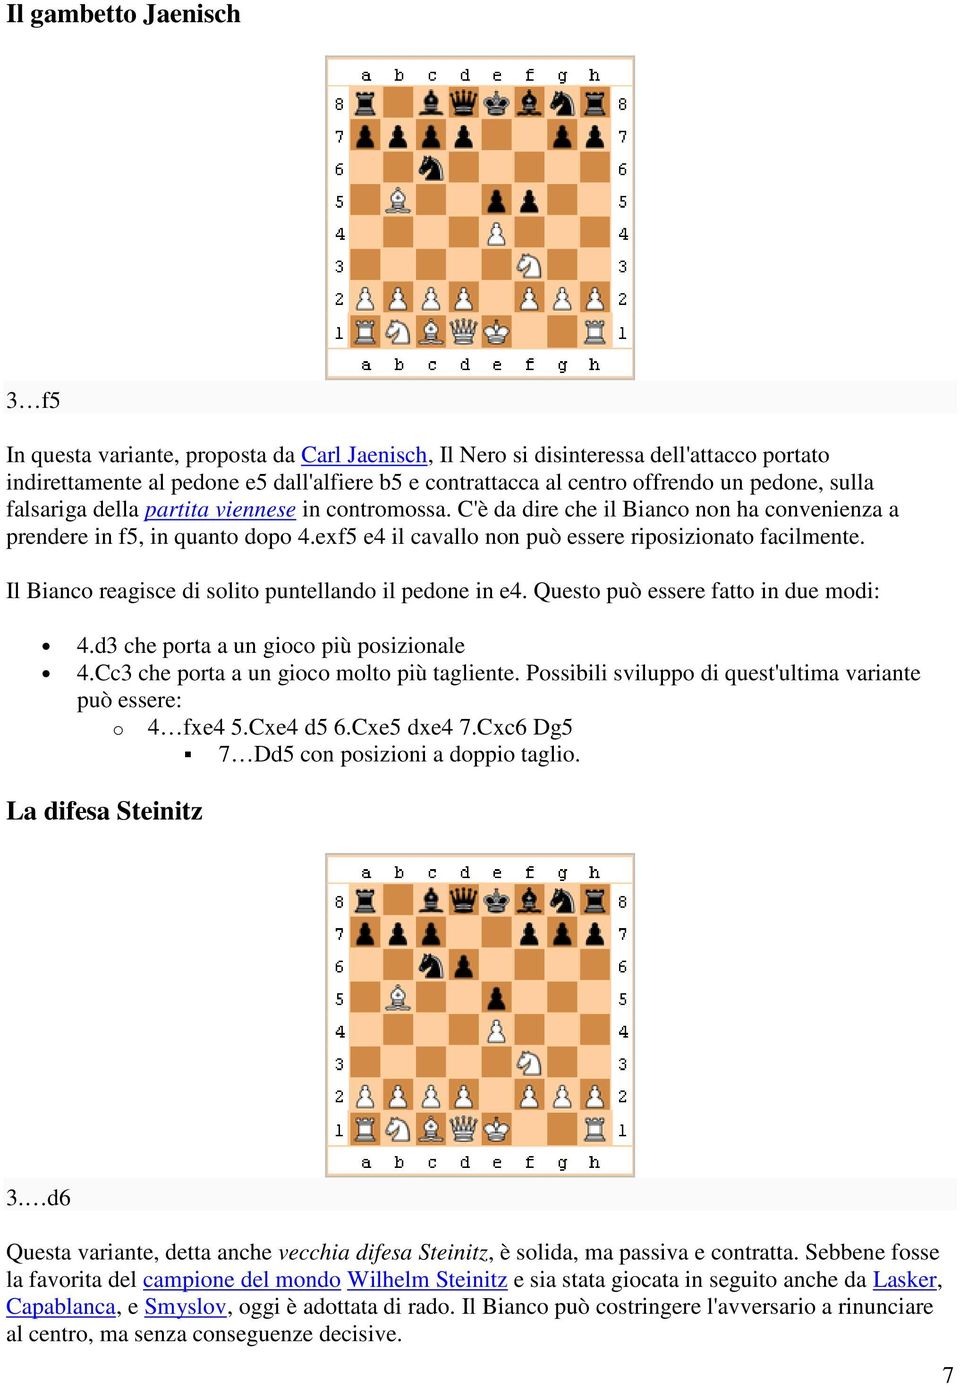 exf5 e4 il cavallo non può essere riposizionato facilmente. Il Bianco reagisce di solito puntellando il pedone in e4. Questo può essere fatto in due modi: 4.d3 che porta a un gioco più posizionale 4.